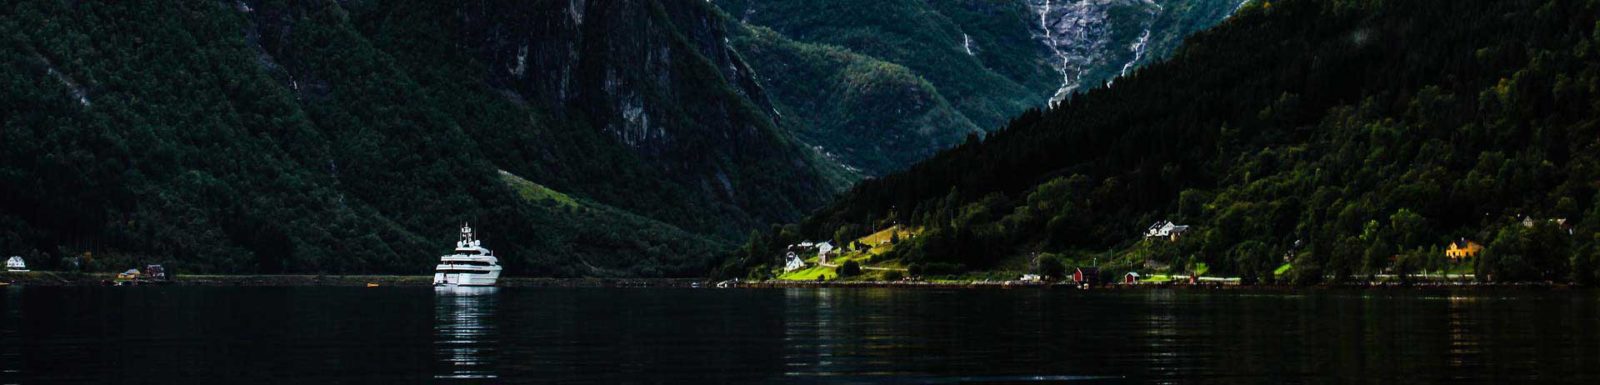 norwegen-fjord-kreuzfahrtschiff-cut